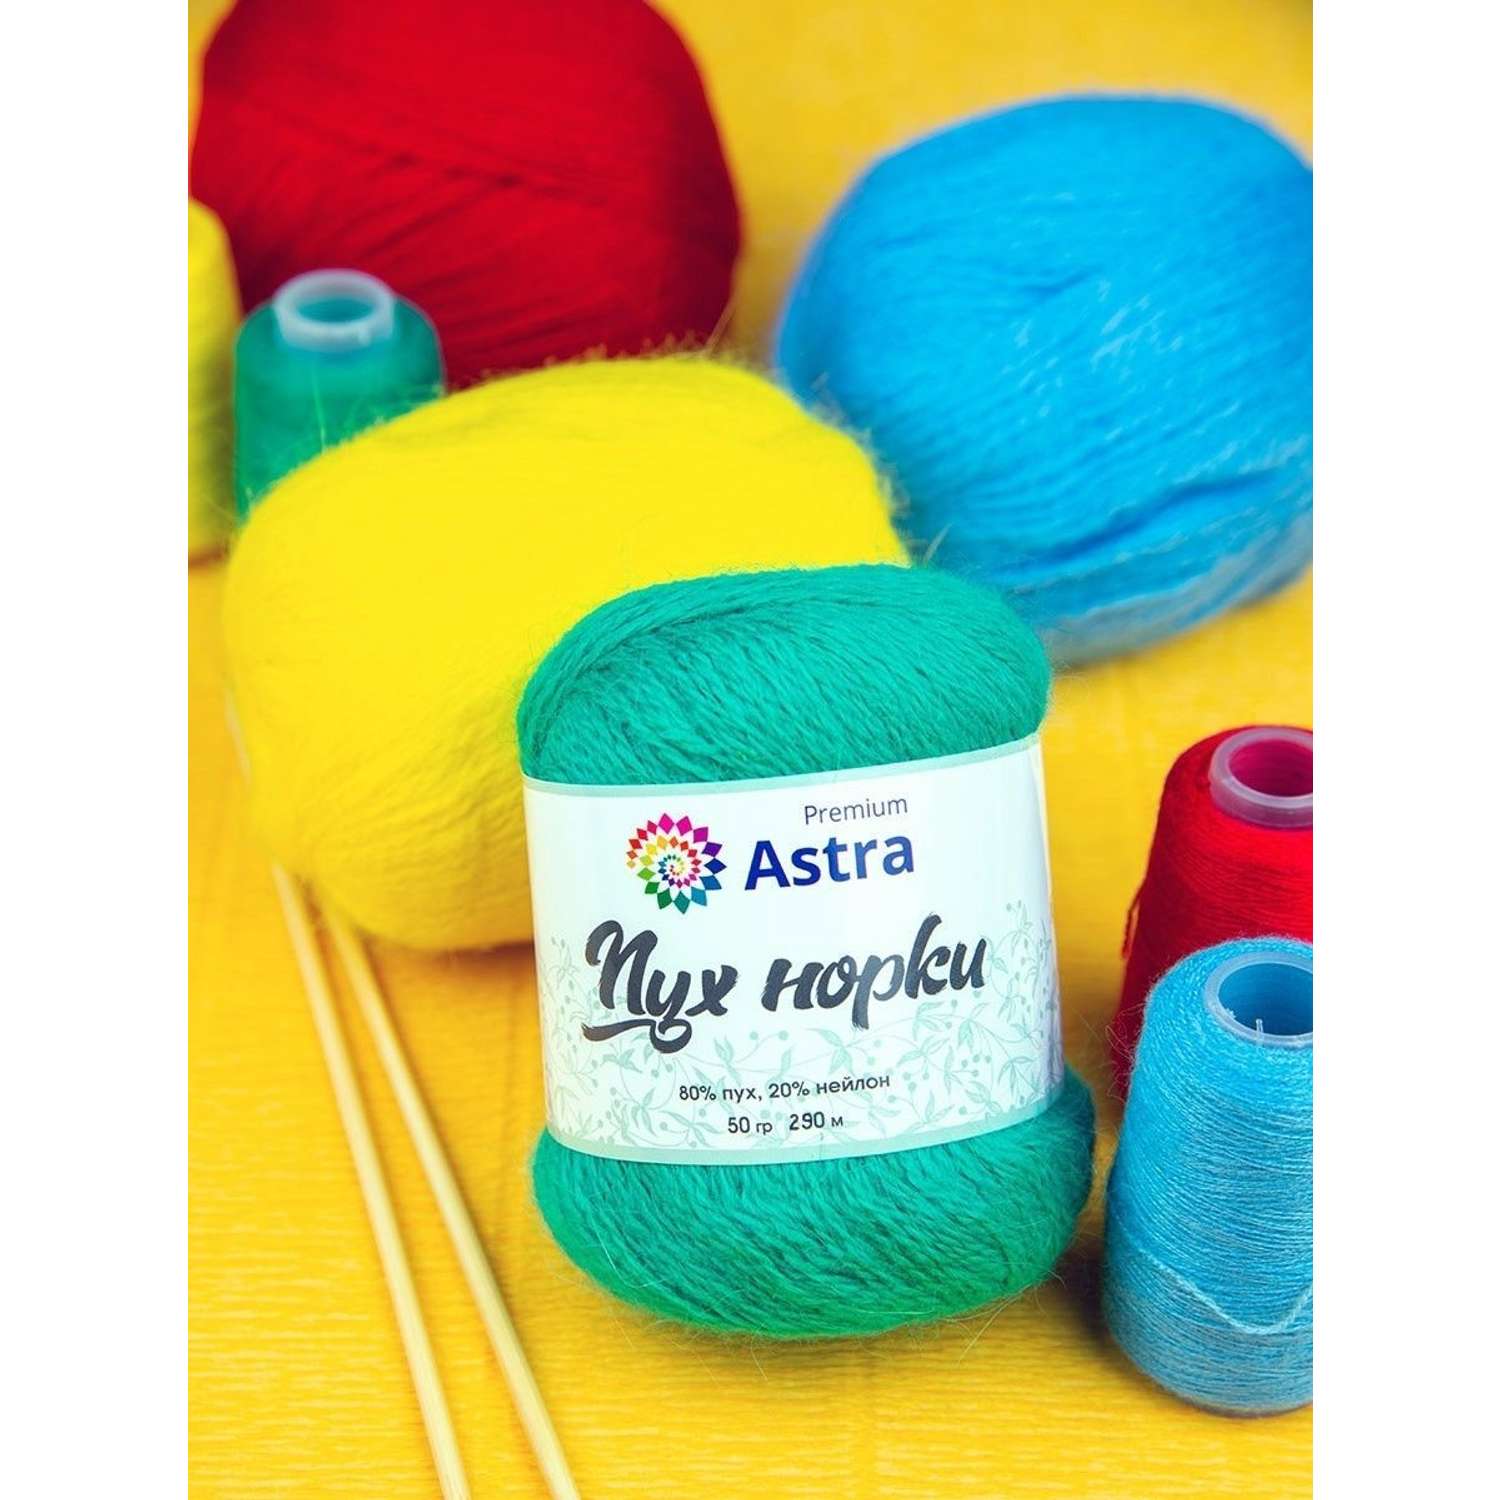 Пряжа Astra Premium Пух норки Mink yarn воздушная с ворсом 50 г 290 м 010 ярко-красный 1 моток - фото 10